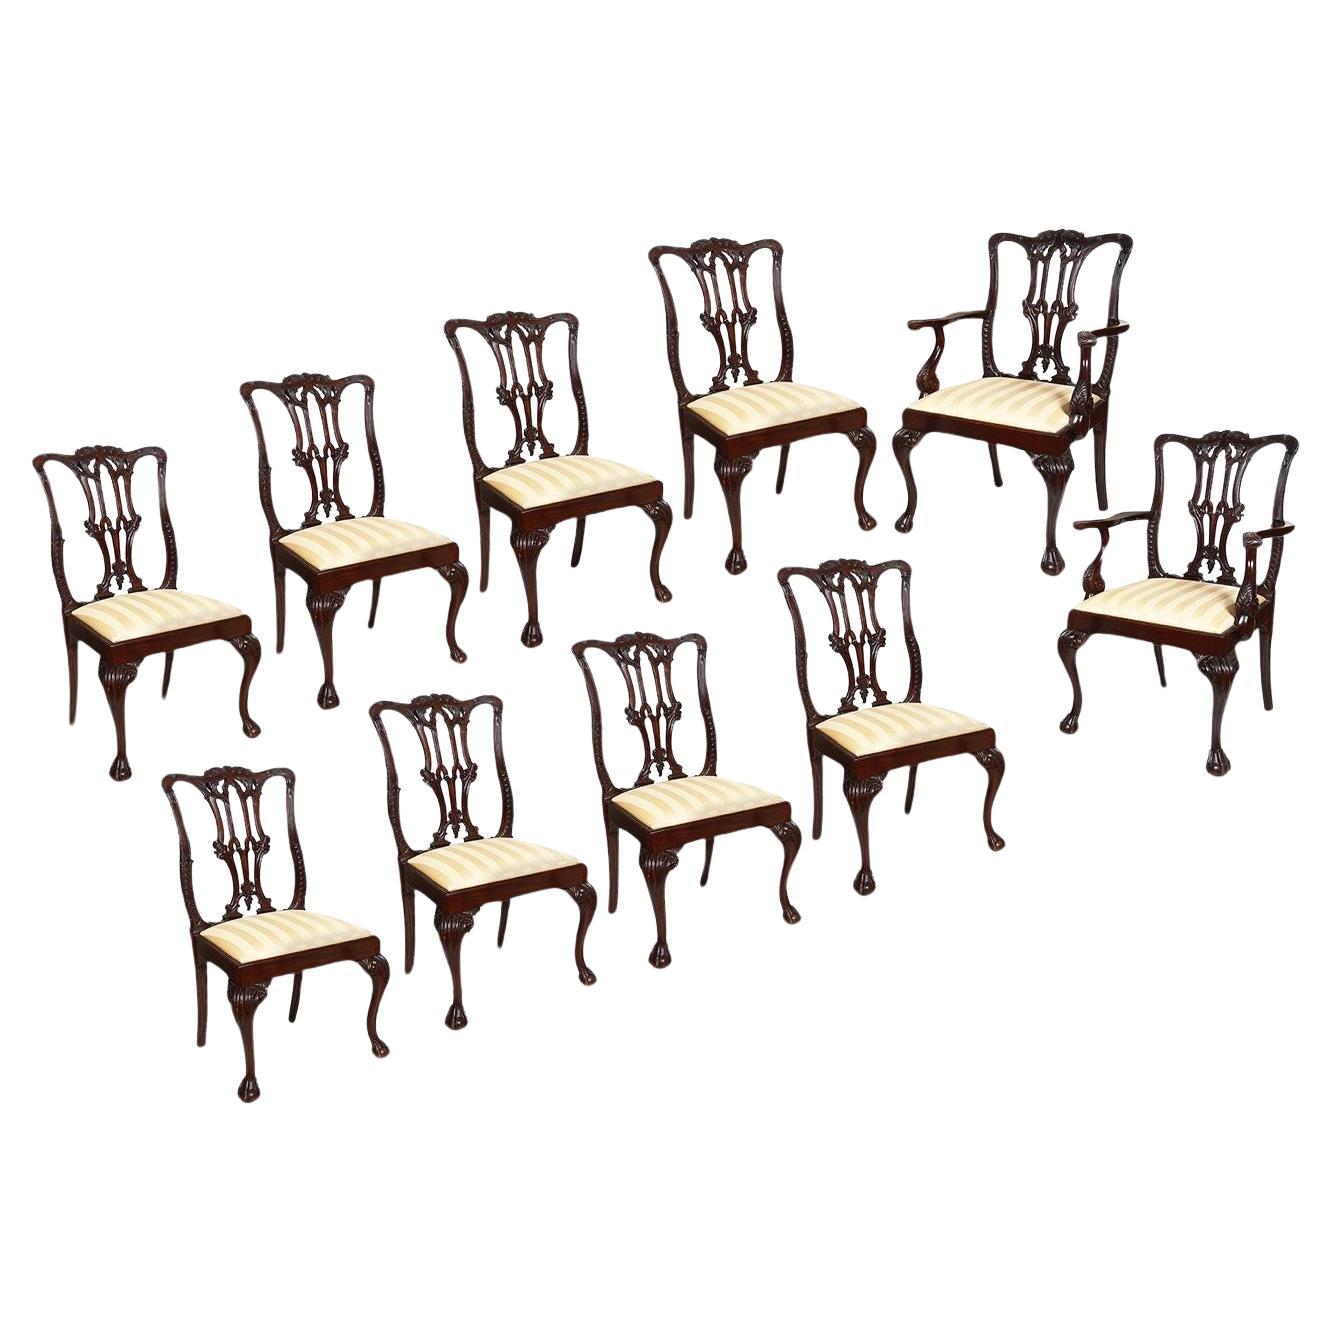 Satz von 10 Esszimmerstühlen im Chippendale-Stil, 19. Jahrhundert.